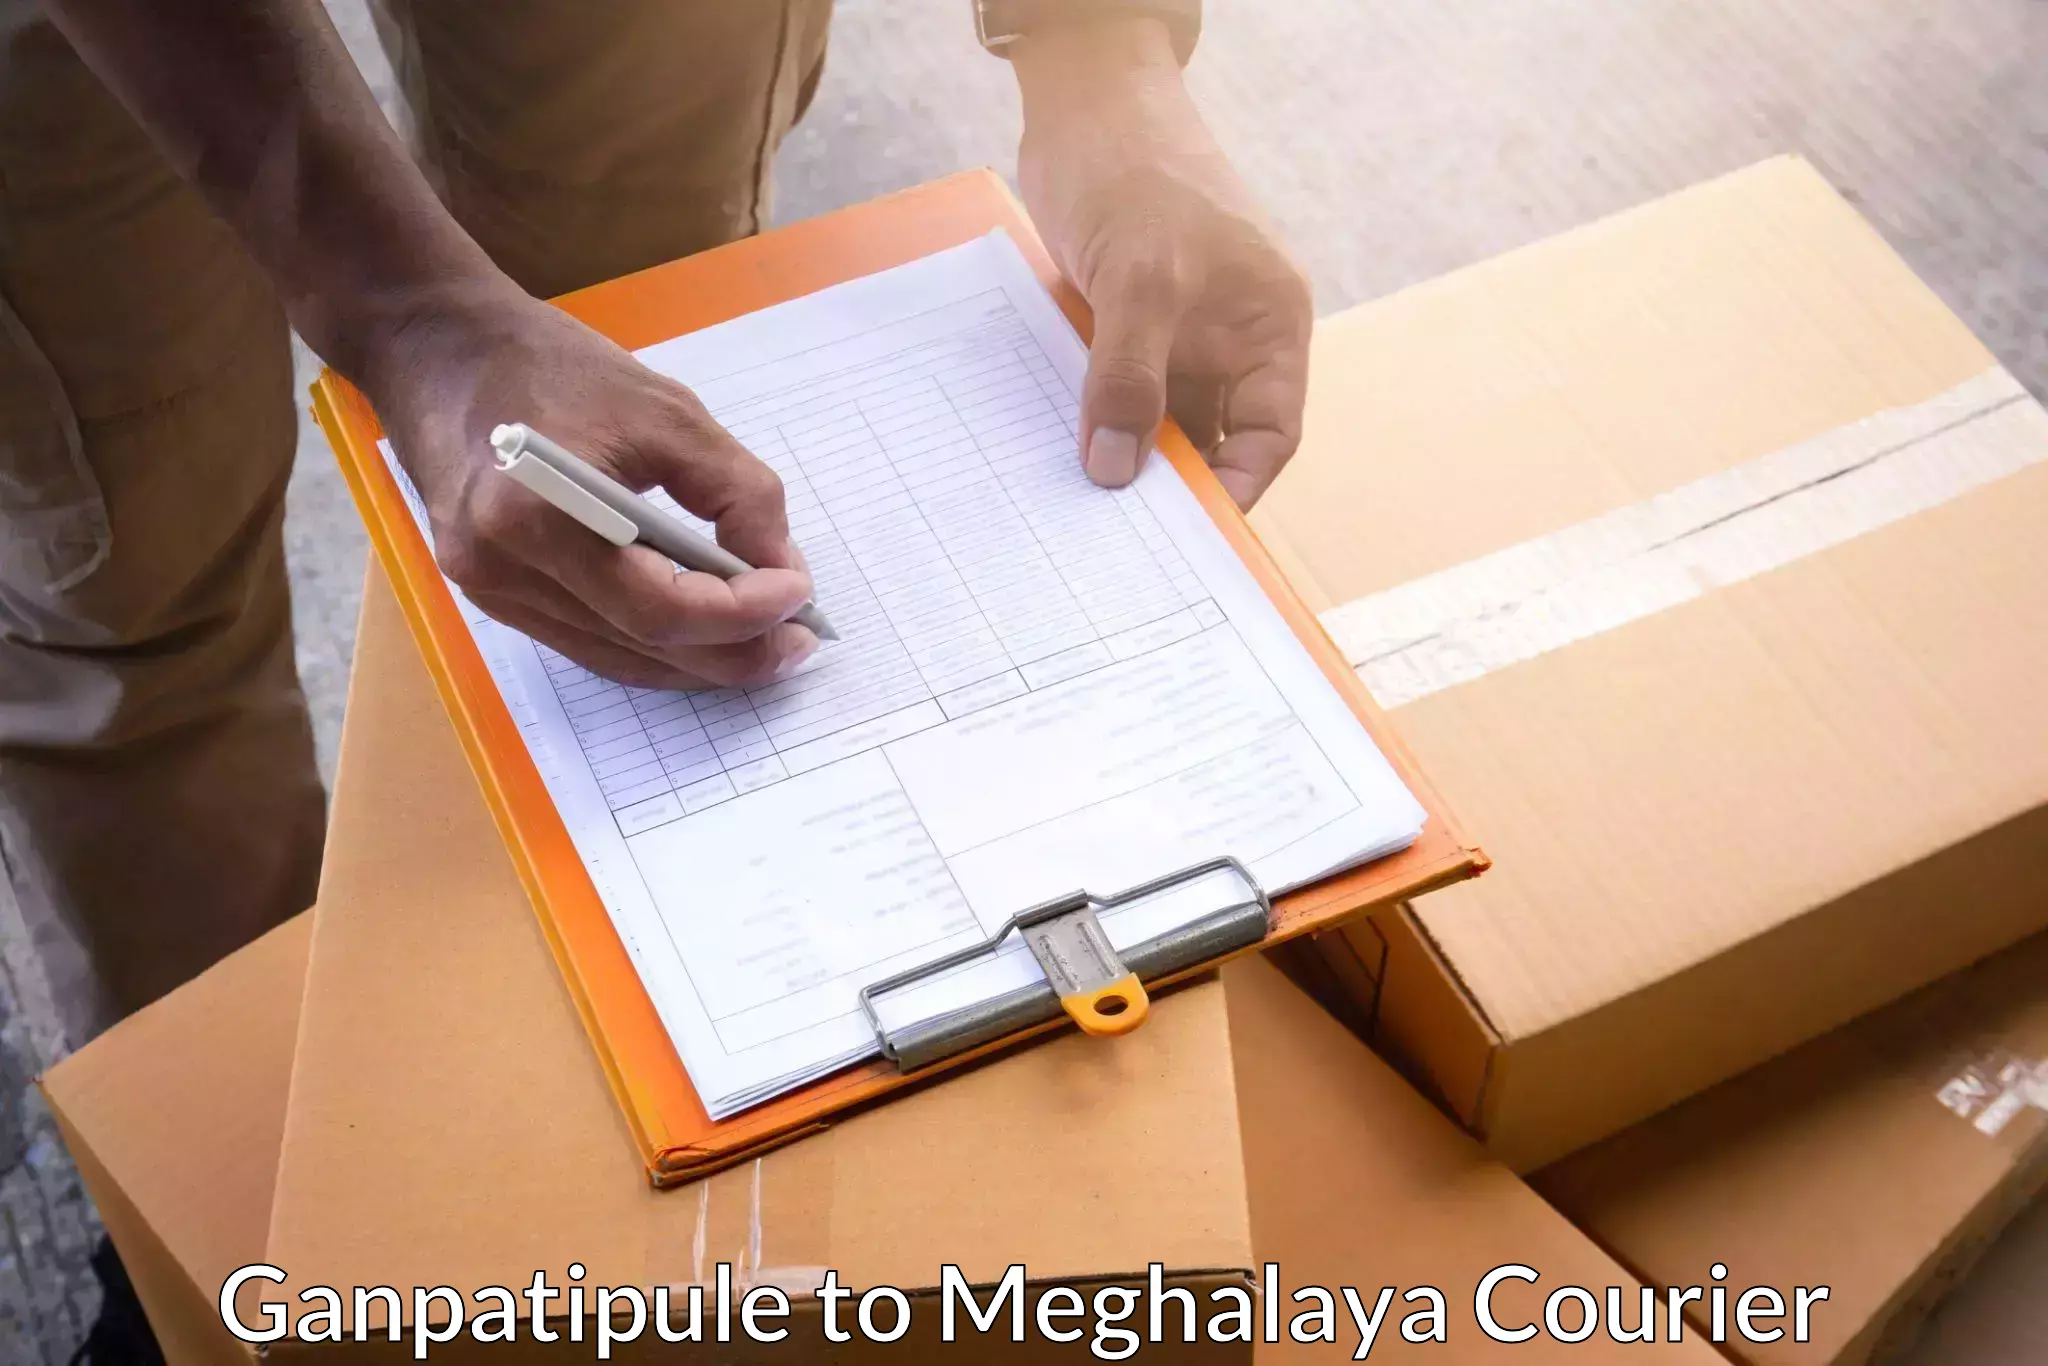 Courier service efficiency in Ganpatipule to Dkhiah West